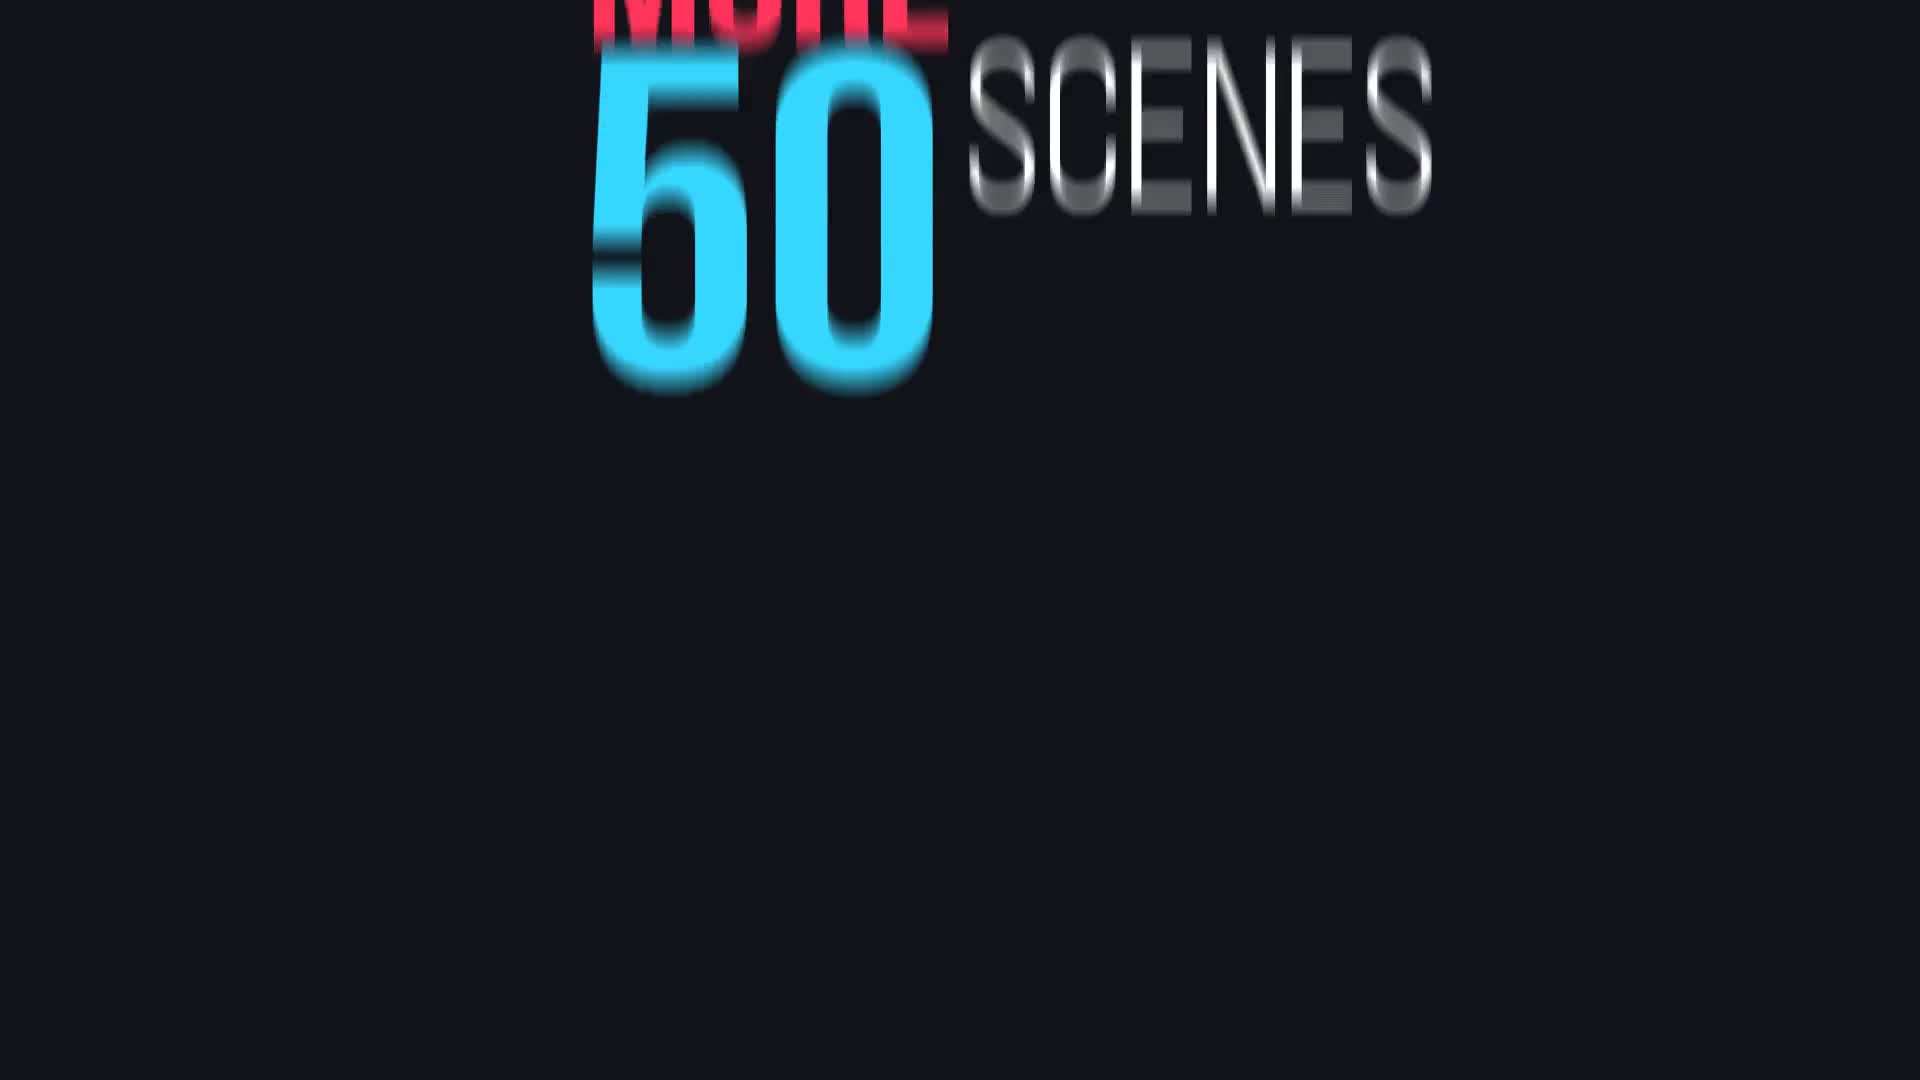 50 Typography Scenes for Premiere Pro Videohive 22114897 Premiere Pro Image 1